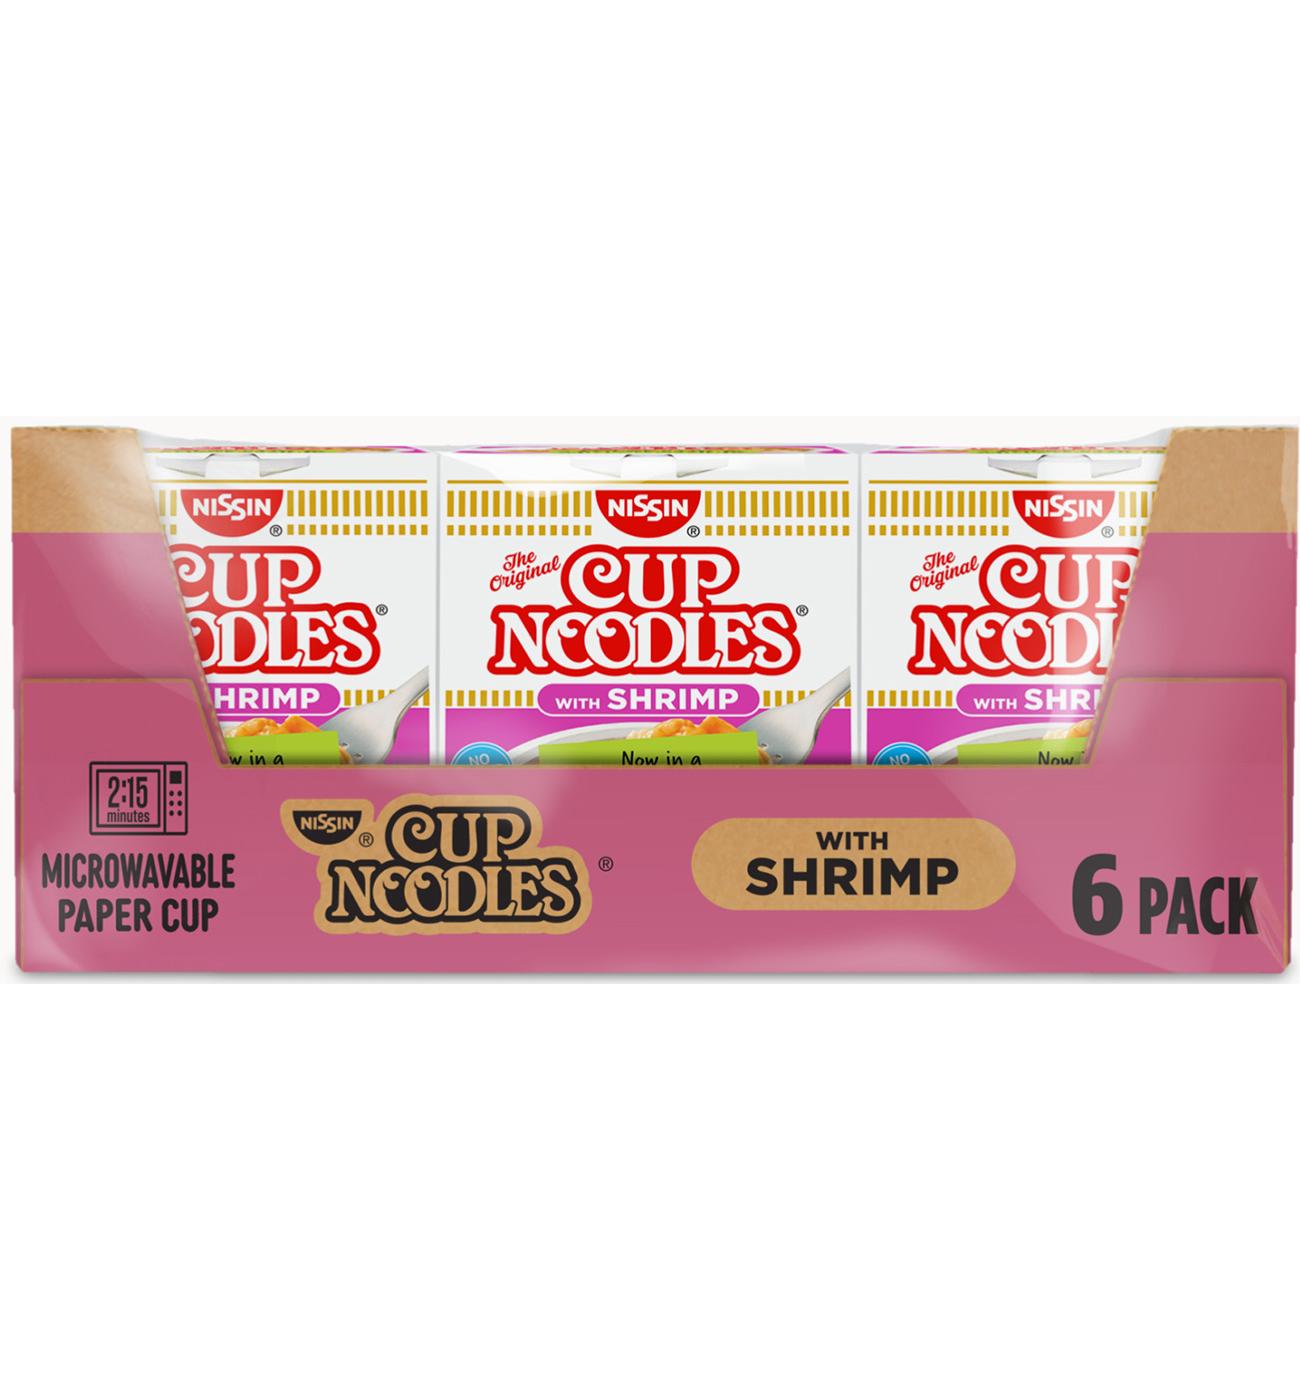 Nissin Shrimp Cup Noodles Value Pack; image 1 of 5